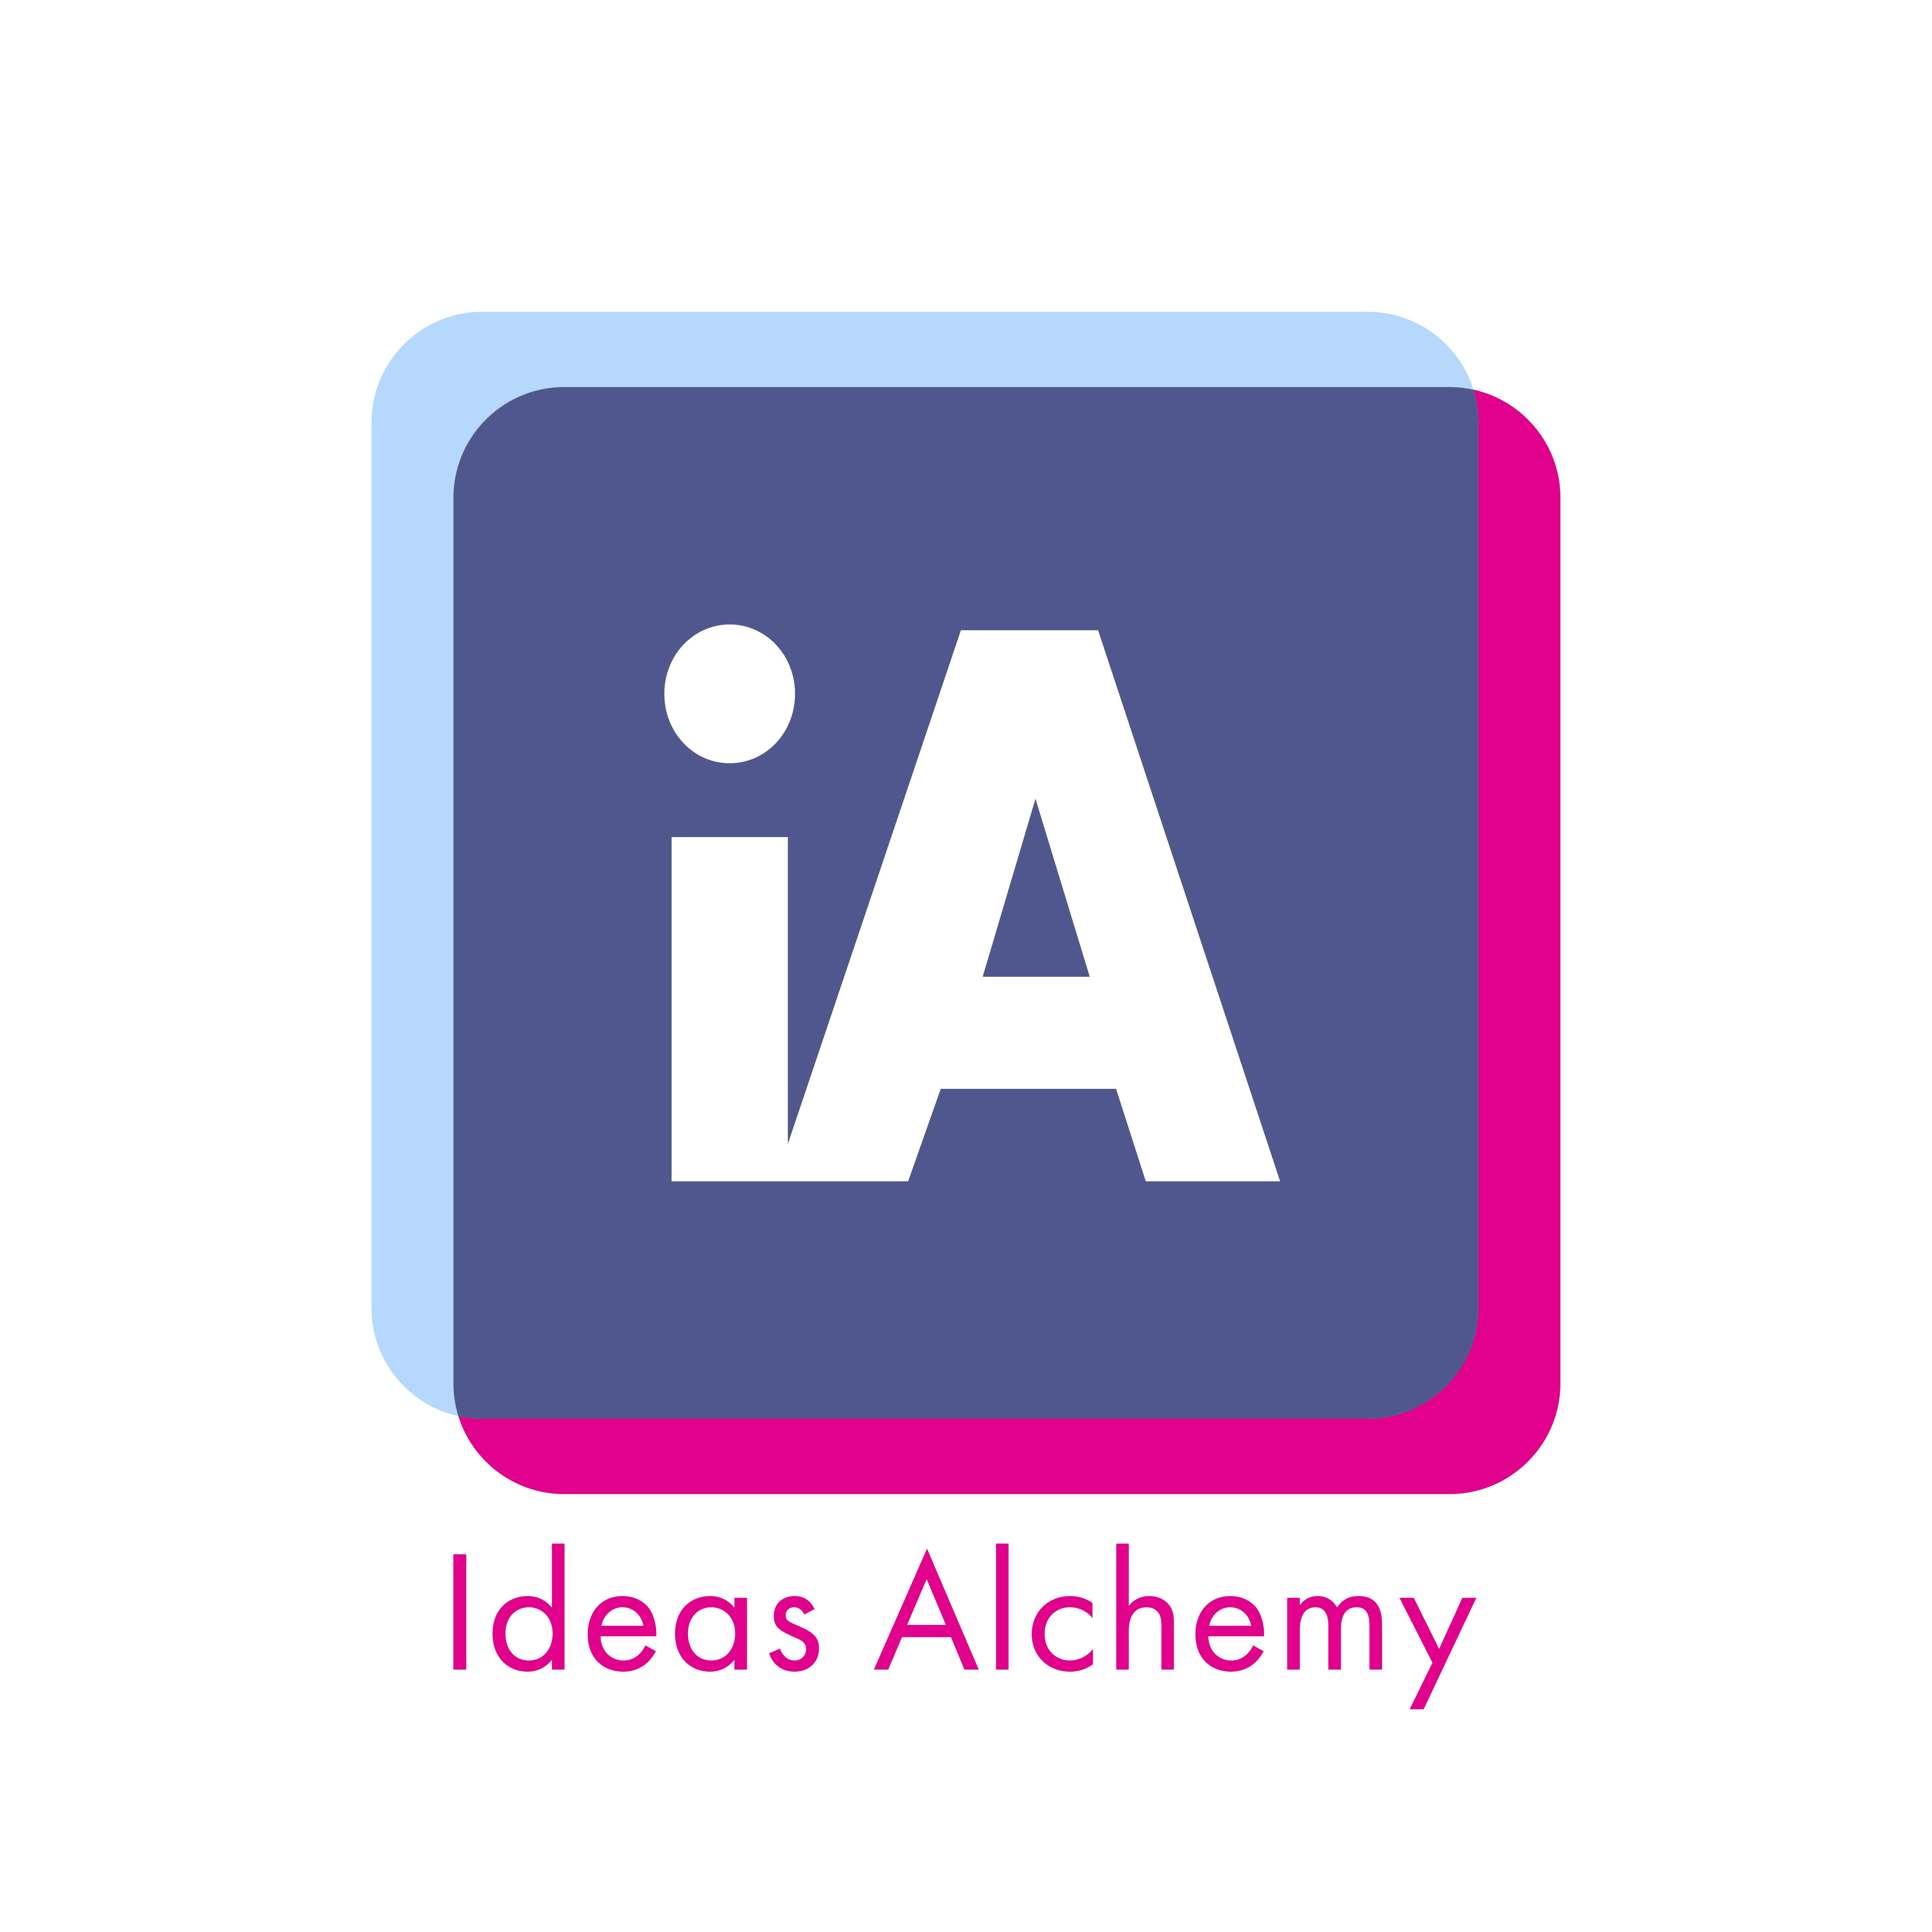 Ideas Alchemy